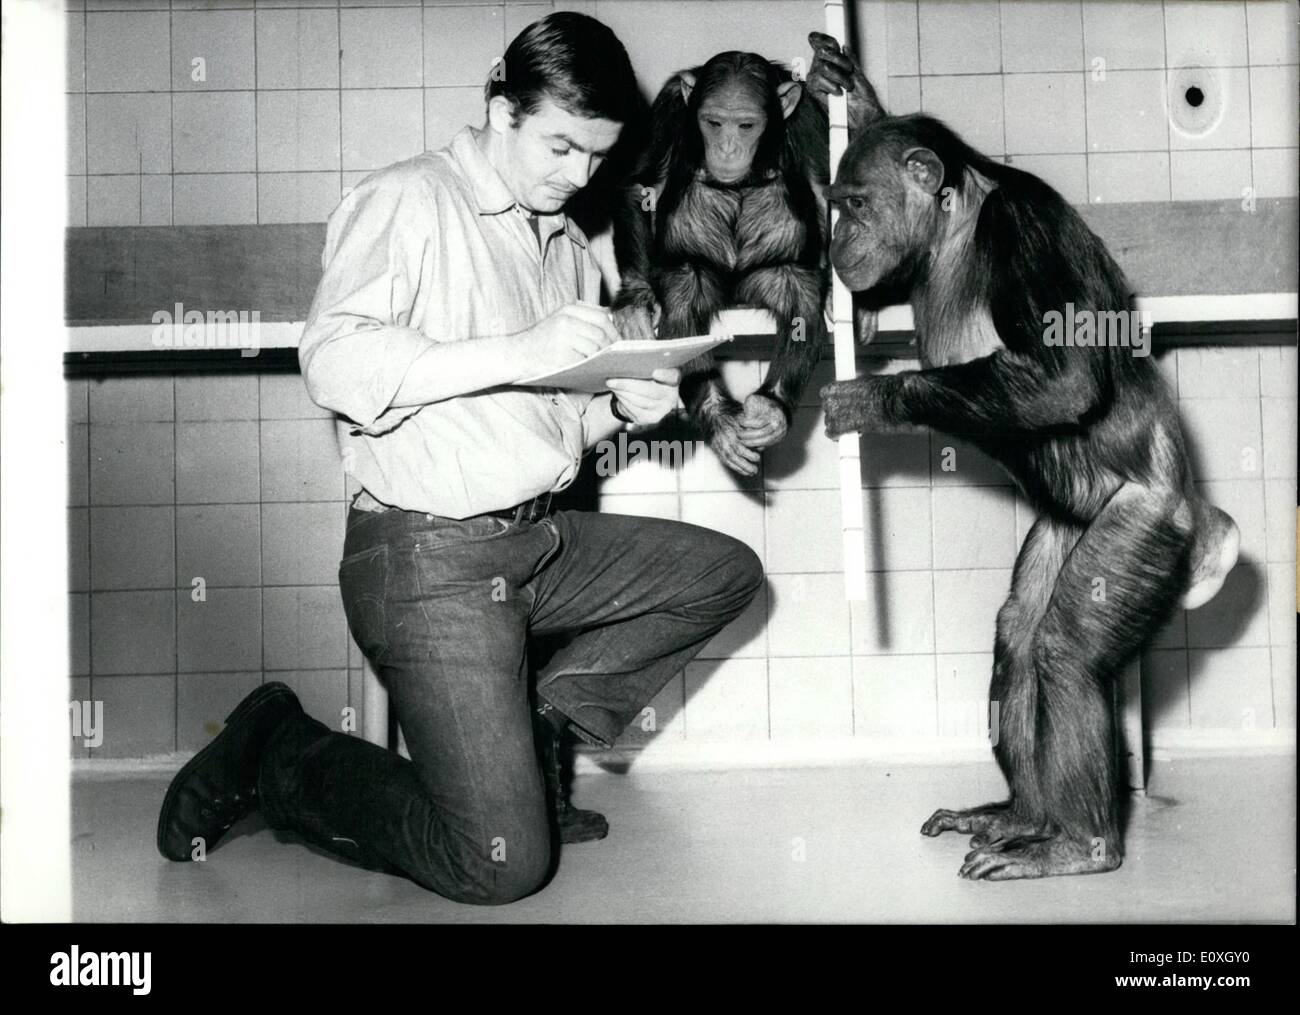 Il 12 Dic. 1966 - Animale custode Klose è la marcatura verso il basso il tasso di crescita di uno scimpanzé 'Senga'', mentre il bambino scimpanzé madre dell ''Uschi'' si affaccia su inquisitively. La scultura ''Florentiner Mann'' - scultore Hermann Blumenthal. Foto Stock